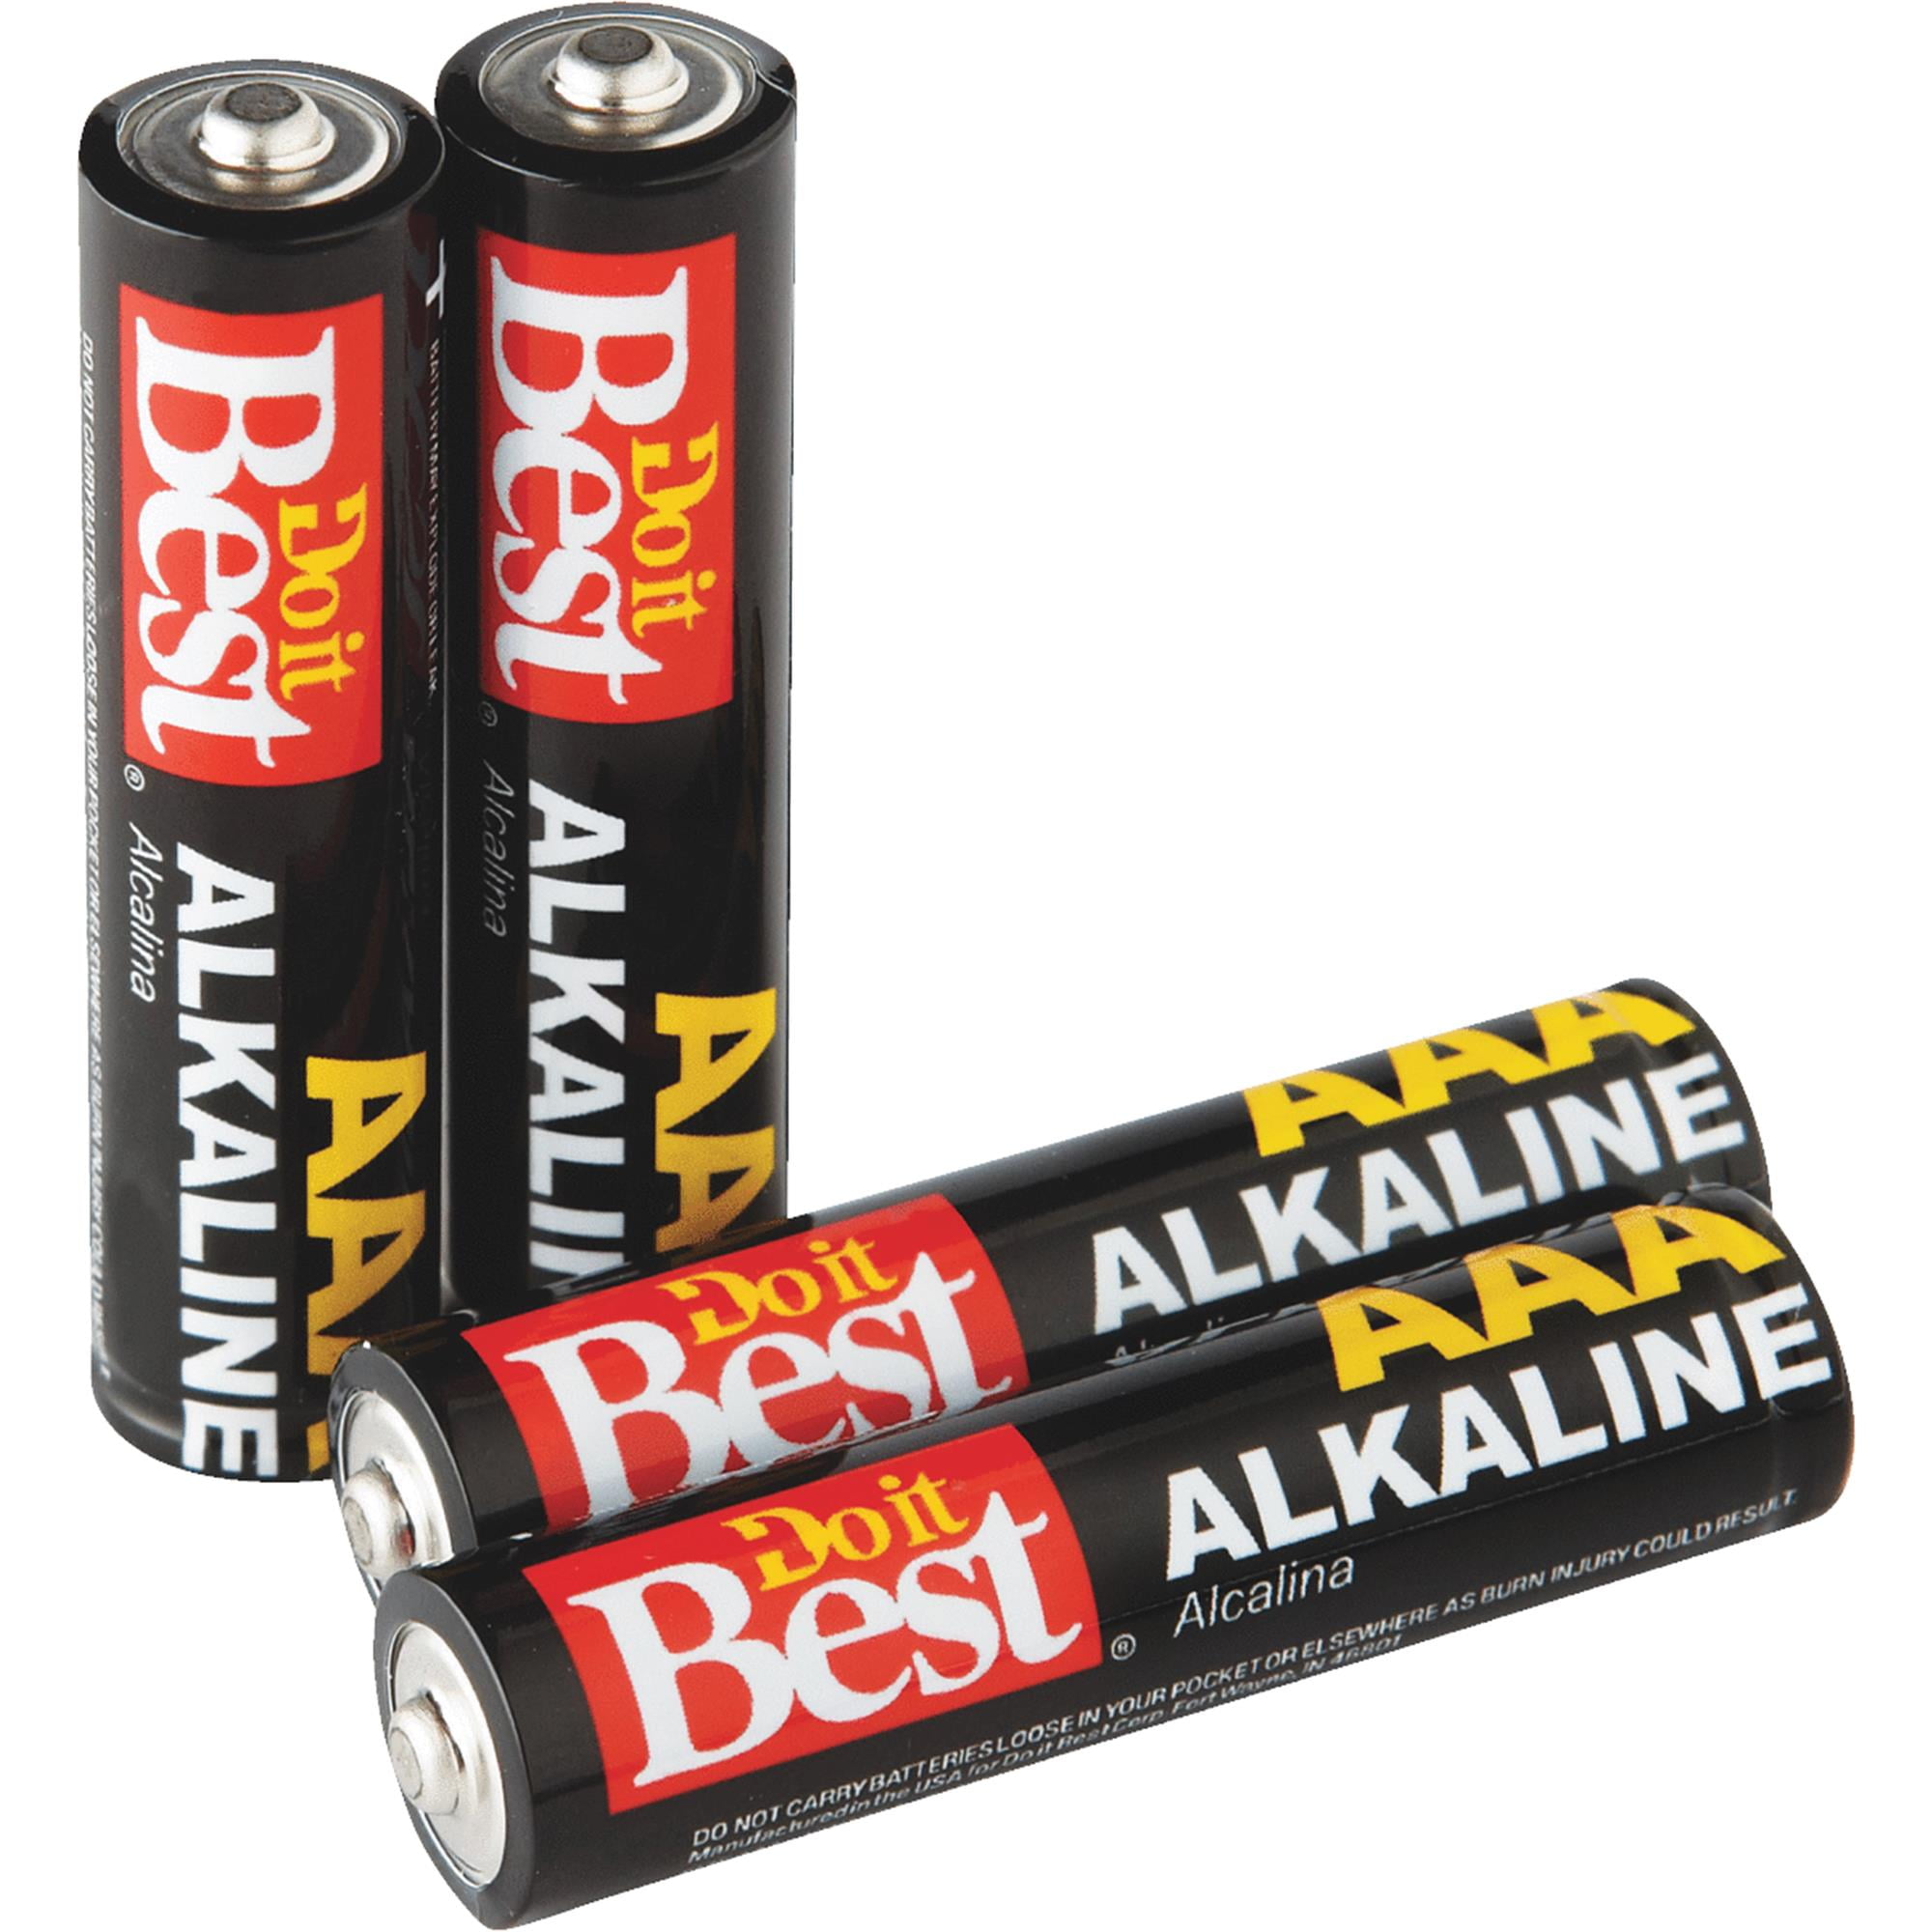 Aaa battery. Алкалиновые батарейки ААА. Батарея AAA. Батарейка Mustang AAA. Батарейки 4 ААА длинные.